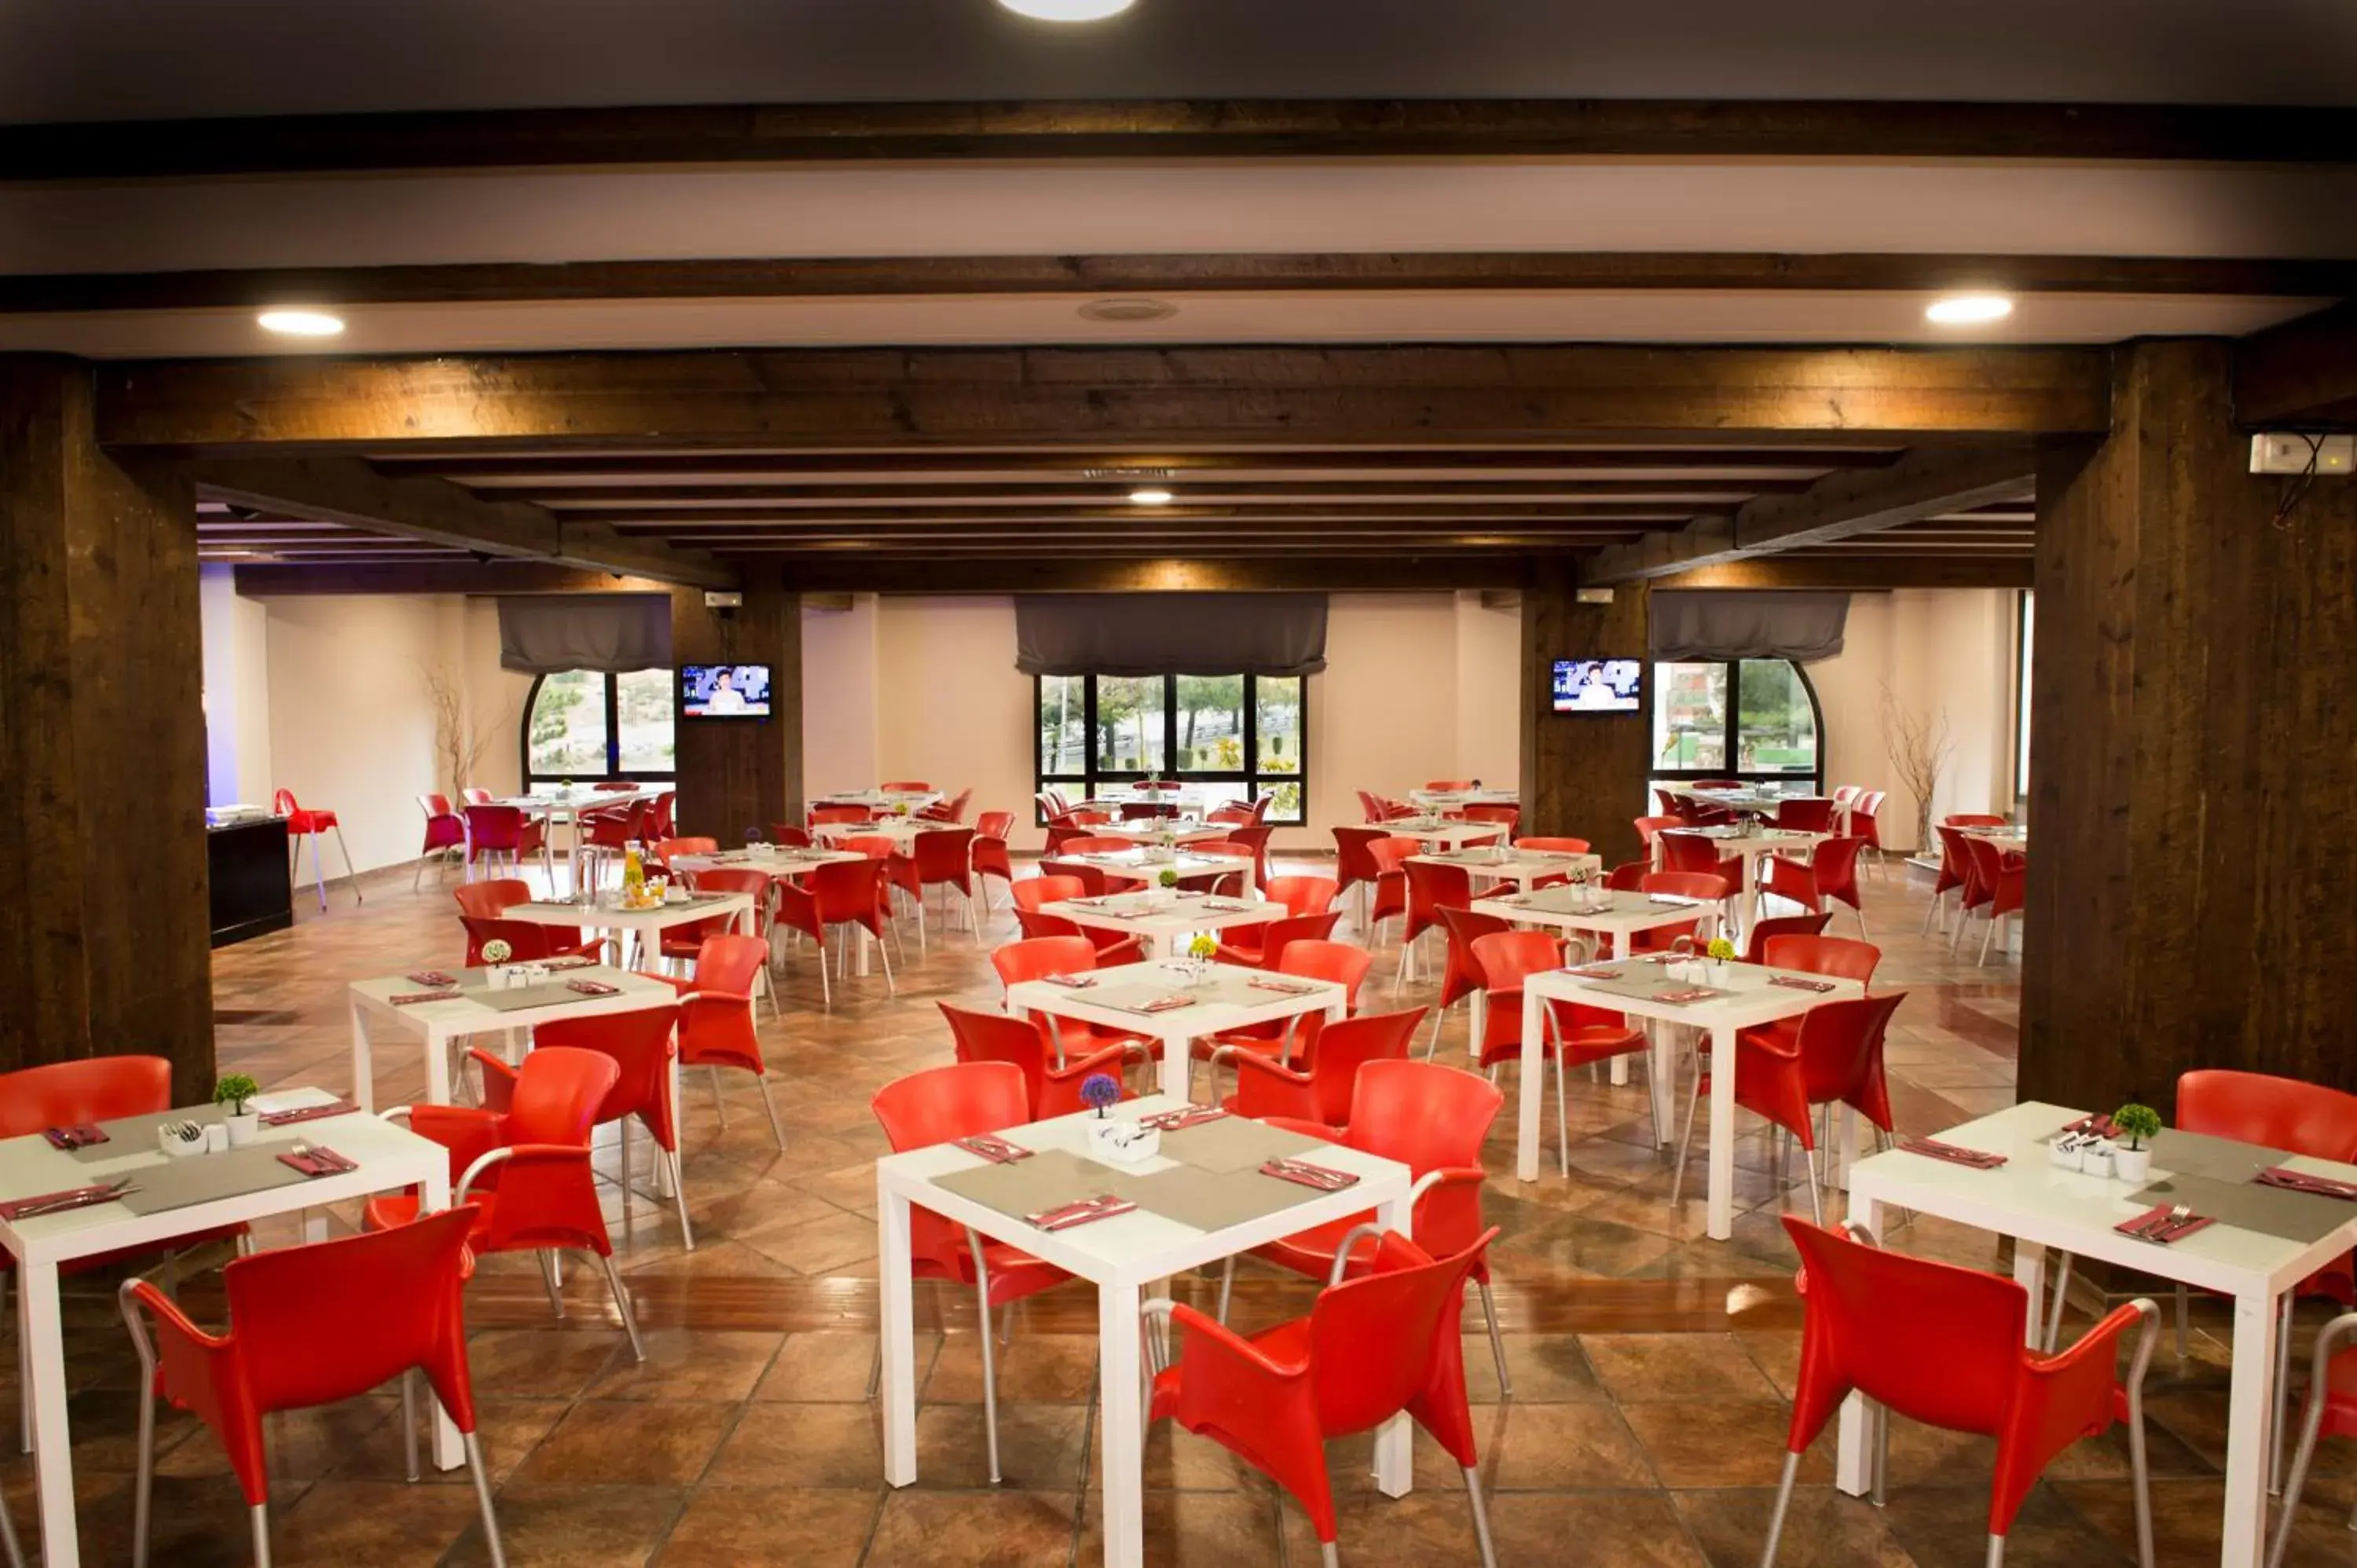 Buffet breakfast, Restaurant/Places to Eat in Segovia Sierra de Guadarrama